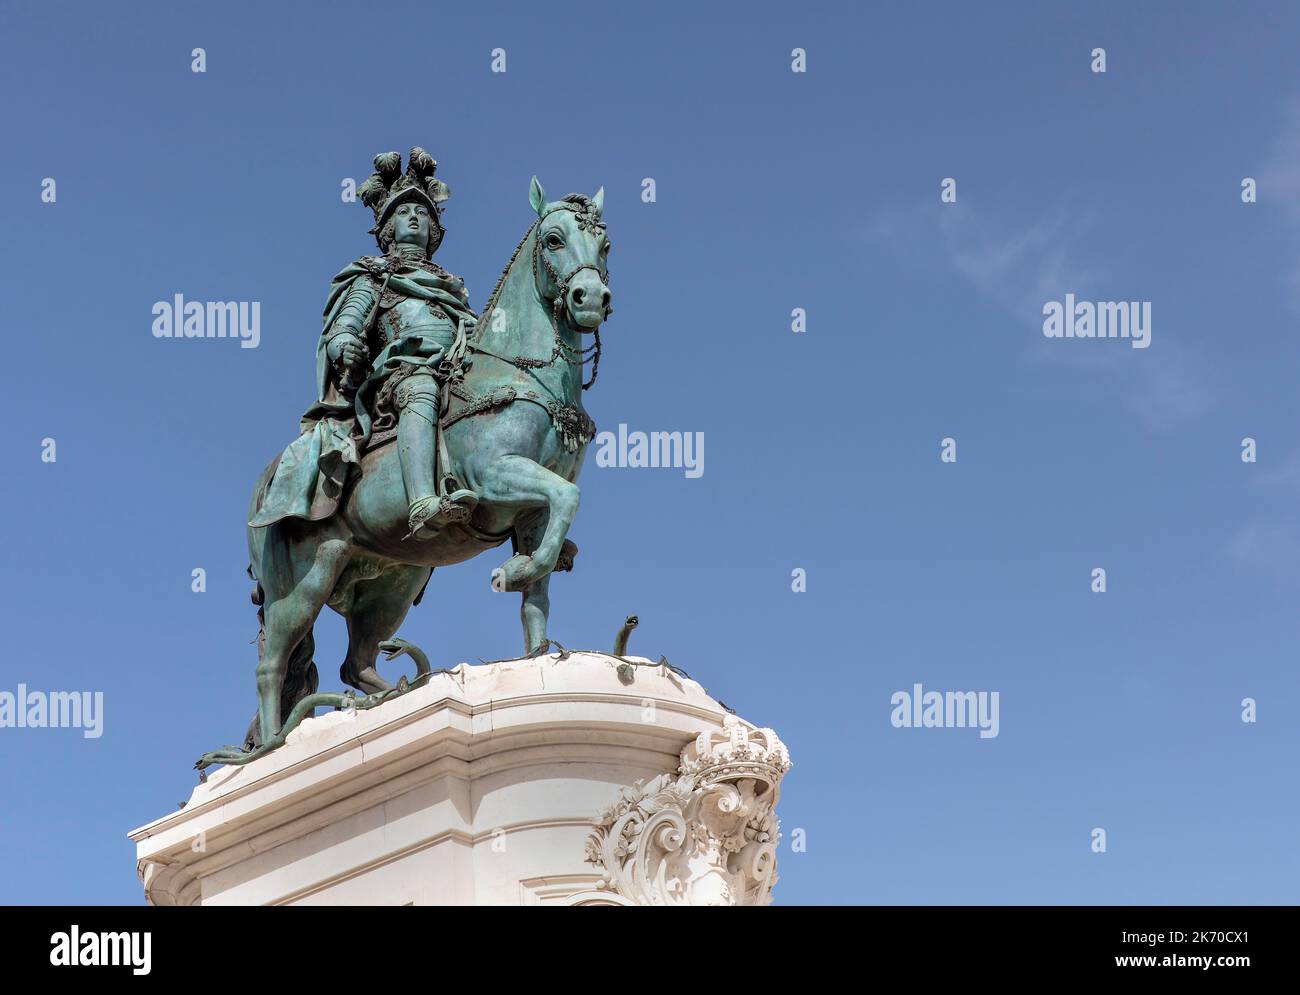 Statua equestre di bronzo del re Jose i nella Praca do Comercio, Lisbona, Portogallo con spazio copia Foto Stock